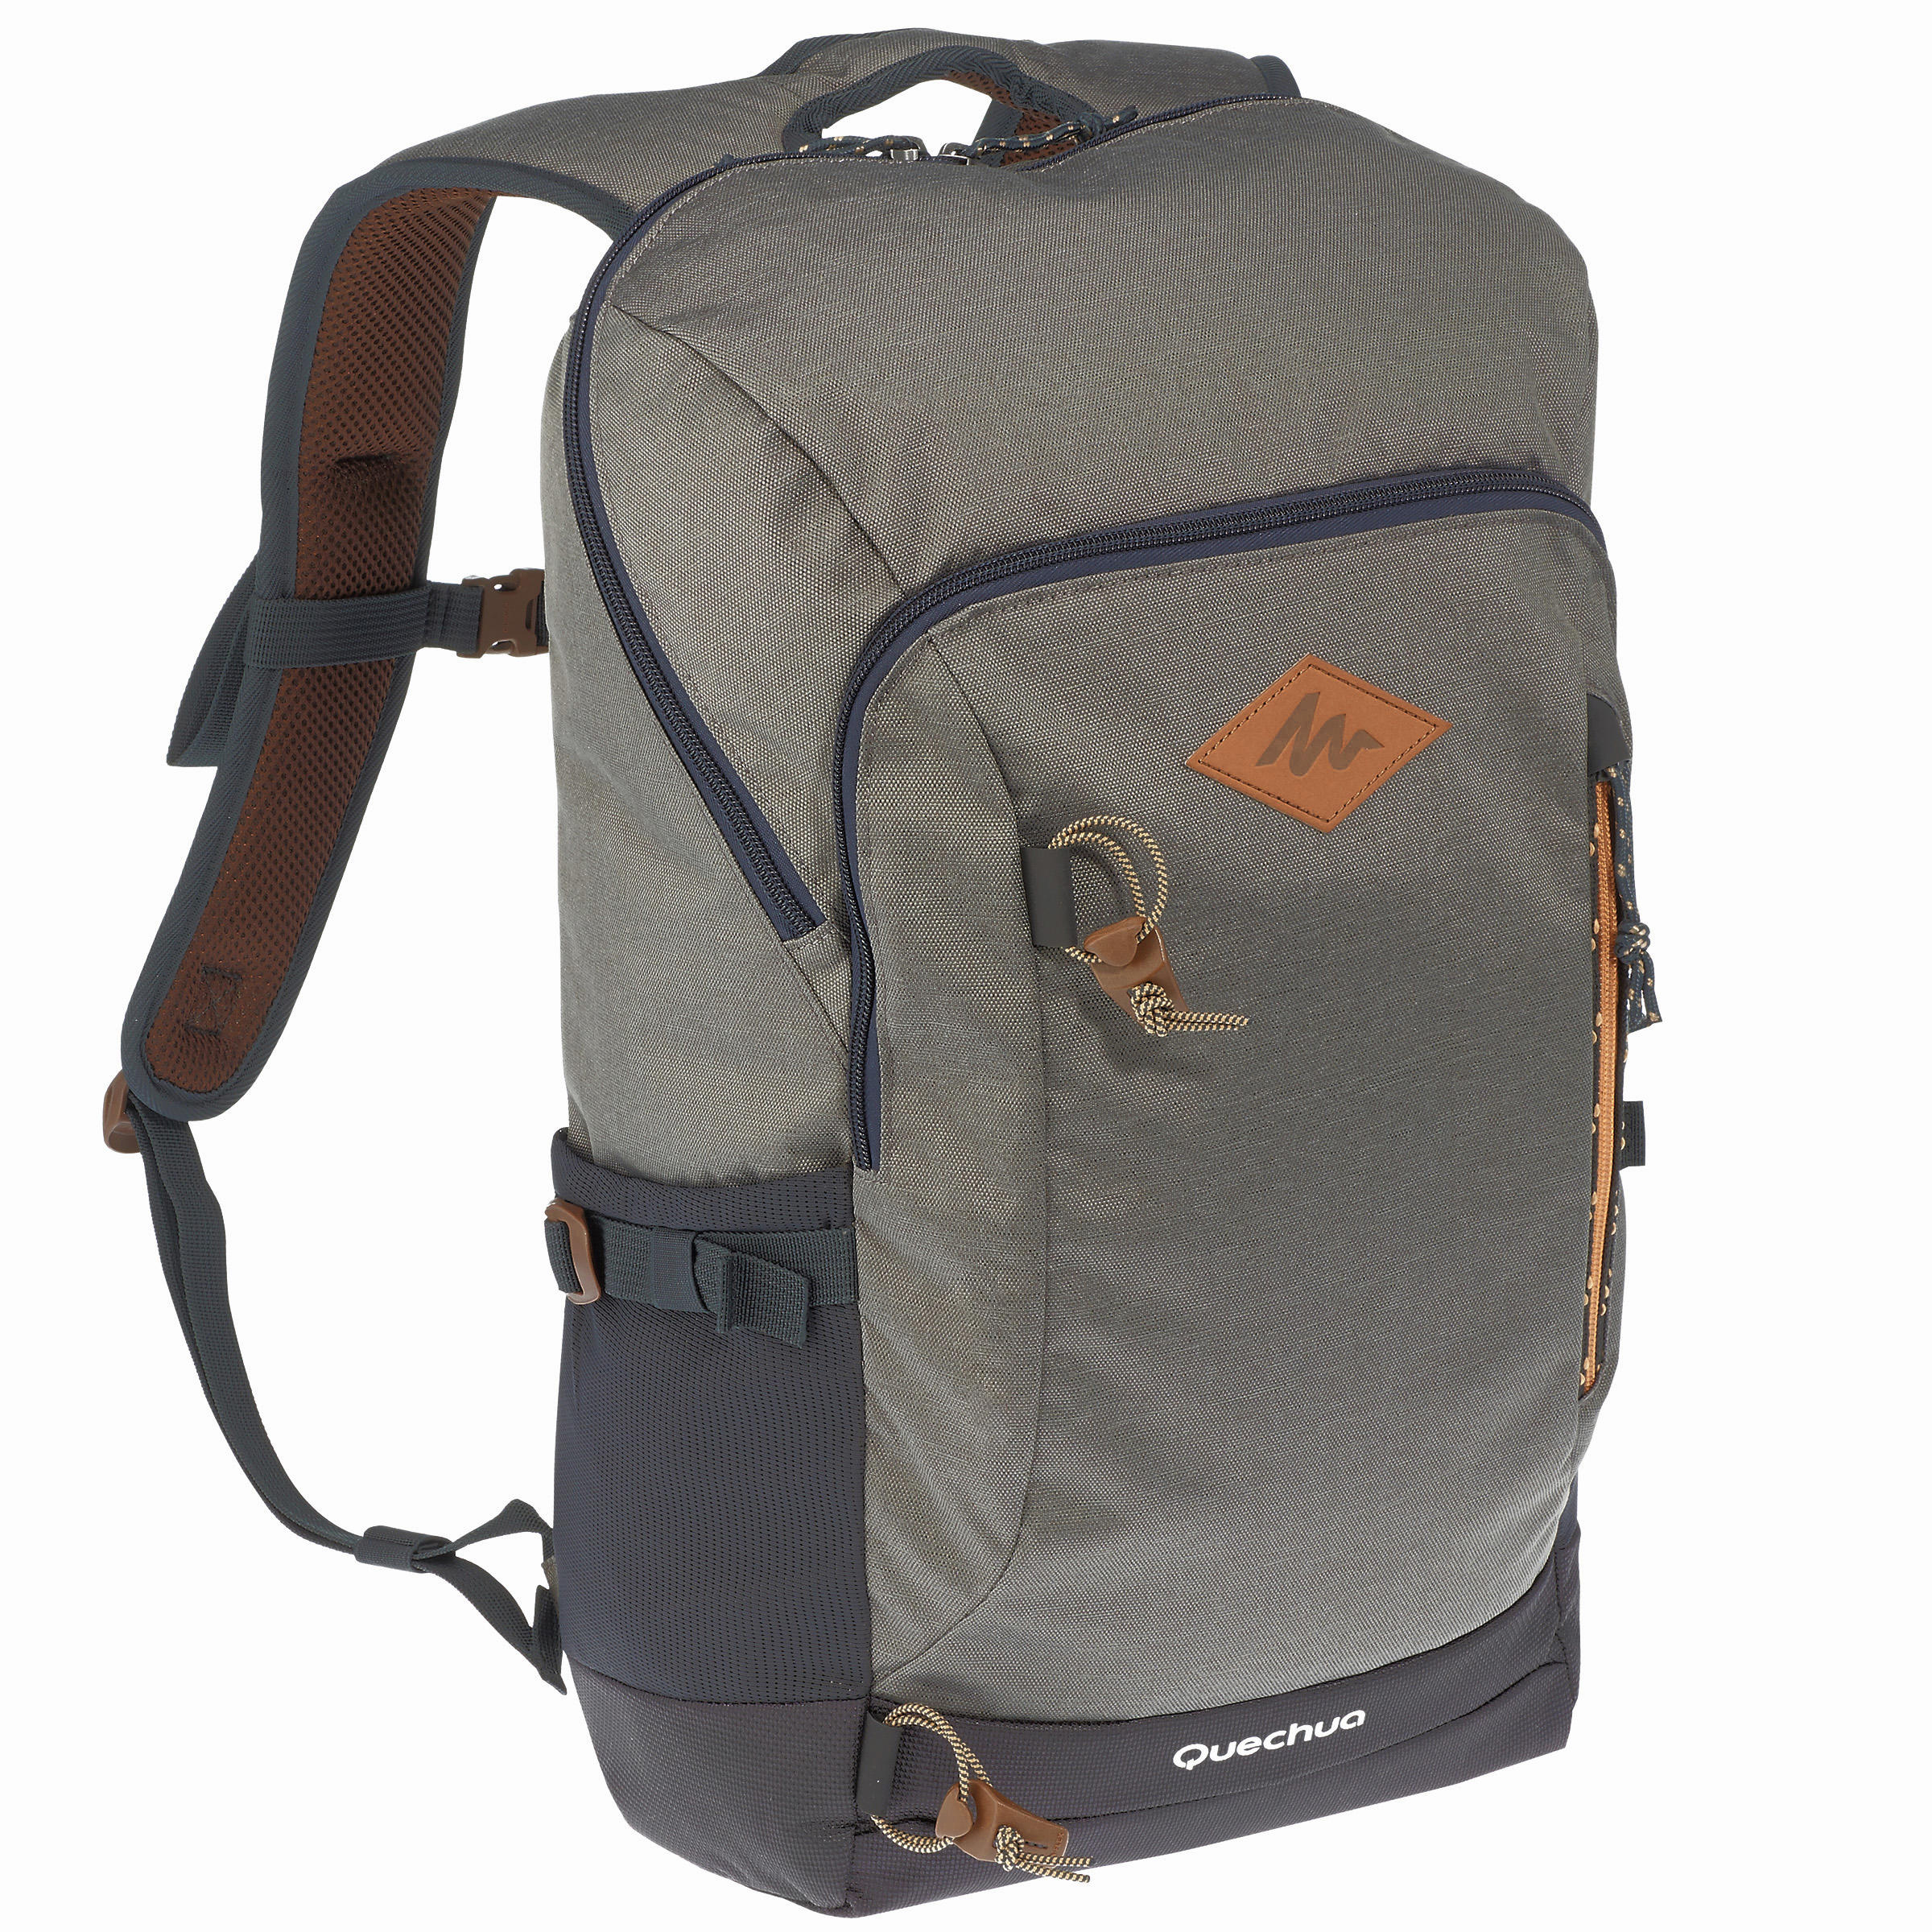 quechua 20l backpack review